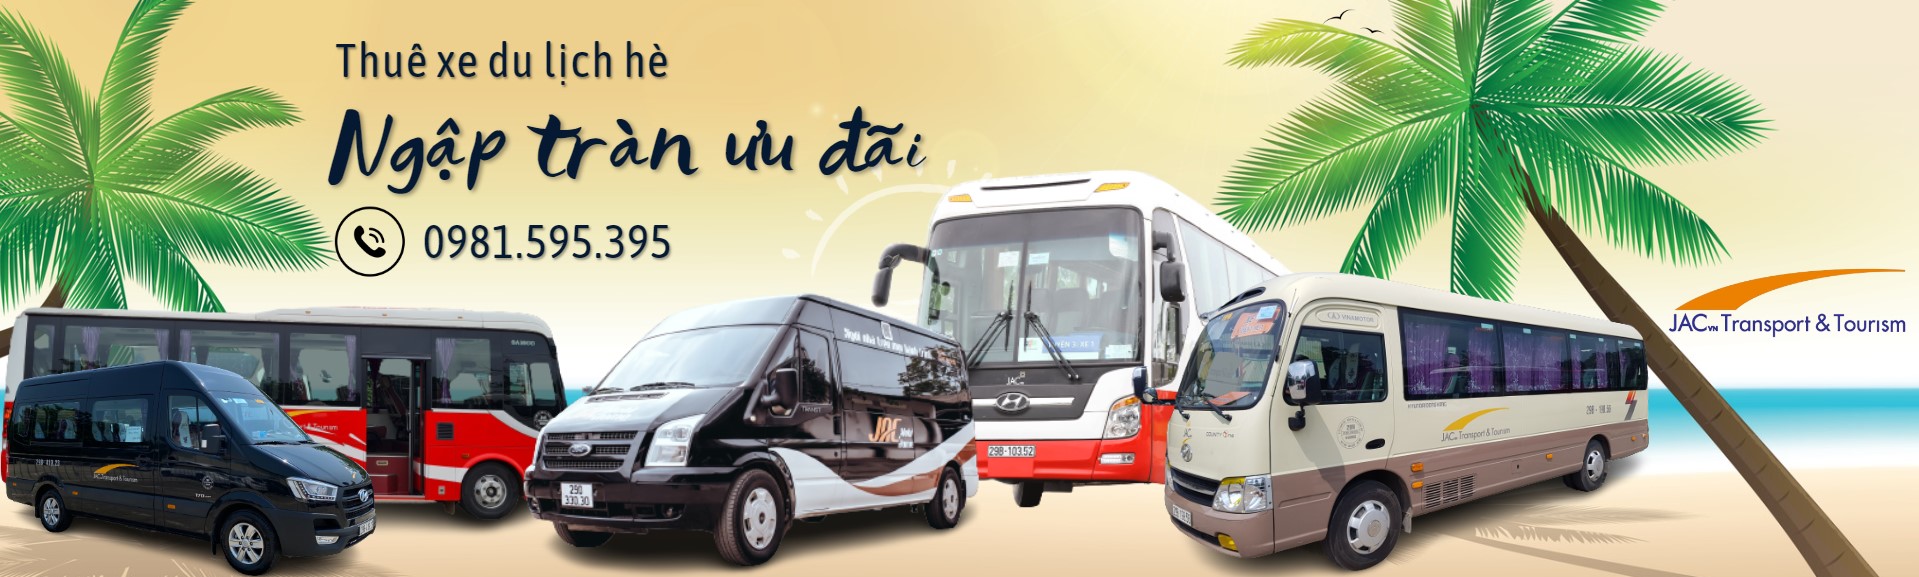 Dịch vụ thuê xe đưa đón sân bay Hà Nội giá rẻ